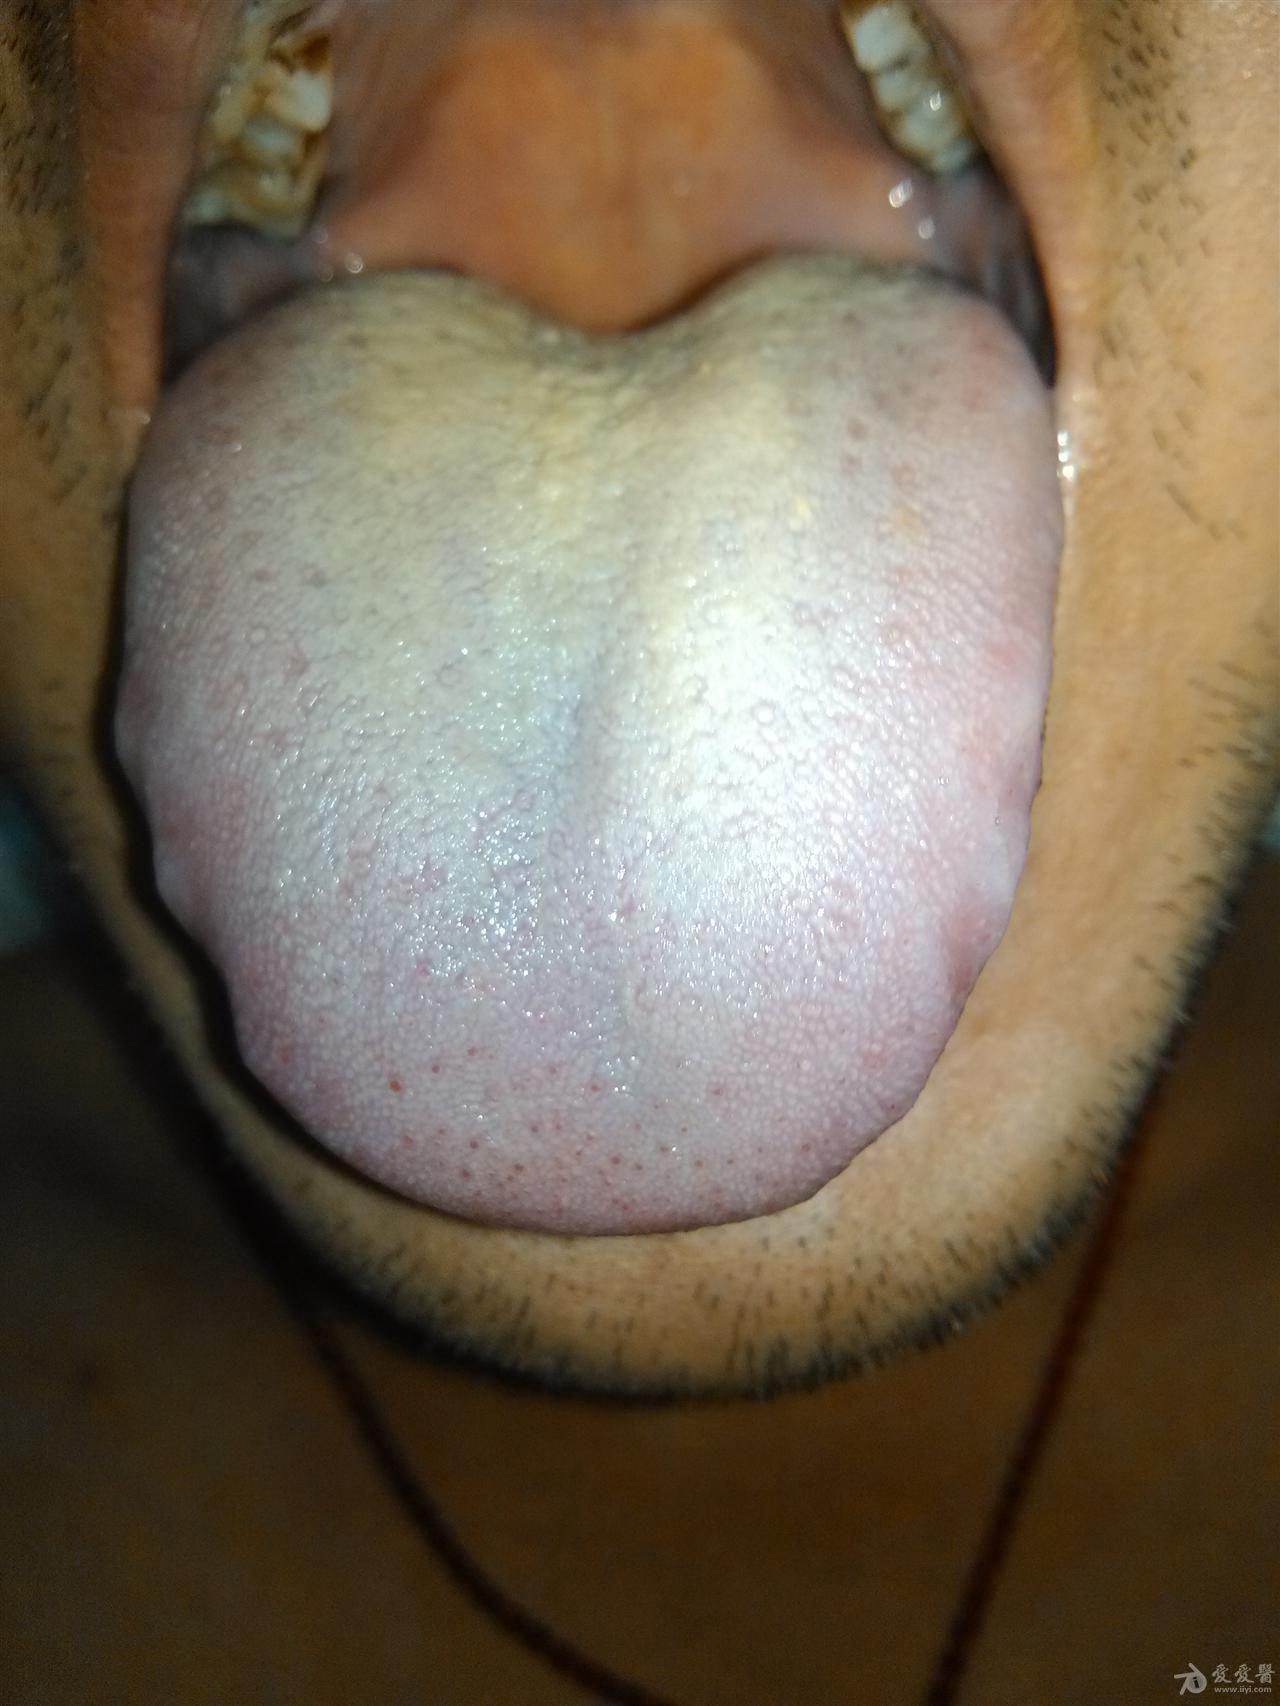 健康的舌头根部图片图片